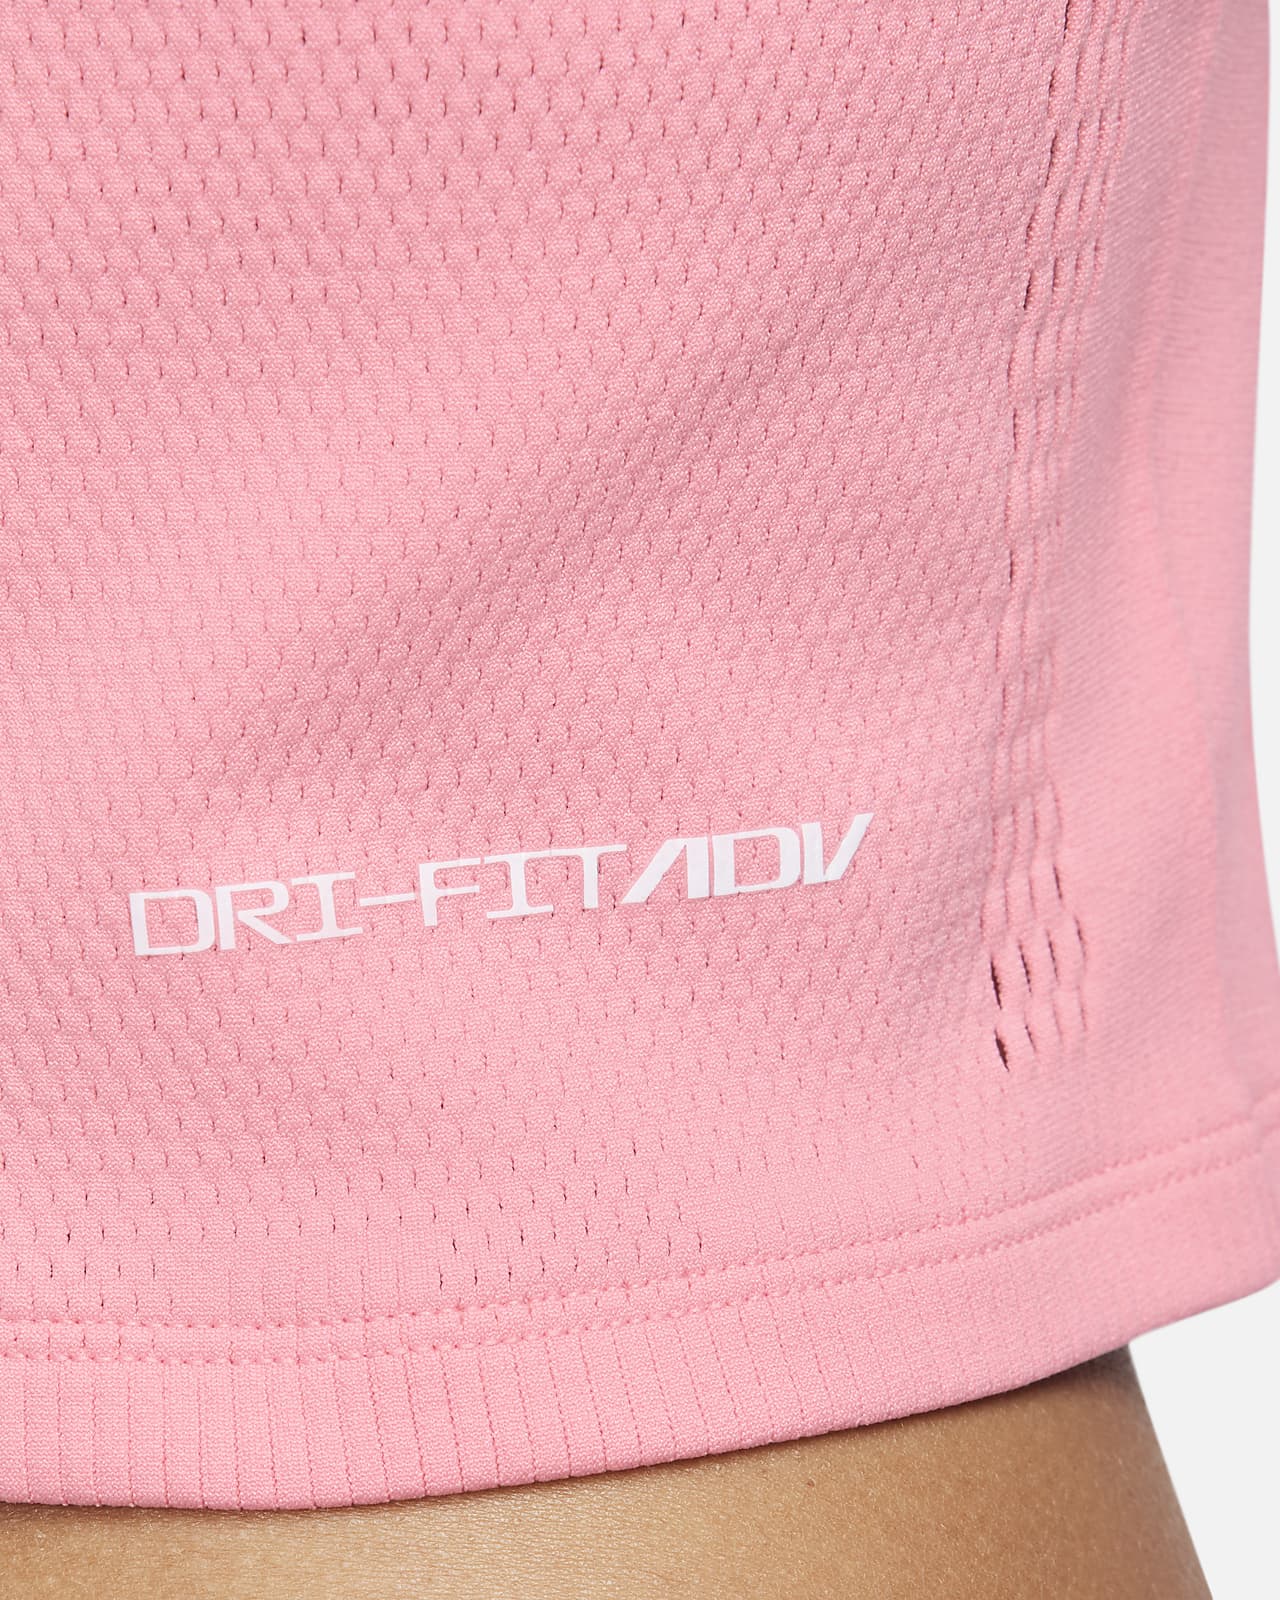 Nike Yoga Luxe Infinalon Crop Top Women's Light Pink XL Sporstwear Tee  T-Shirt